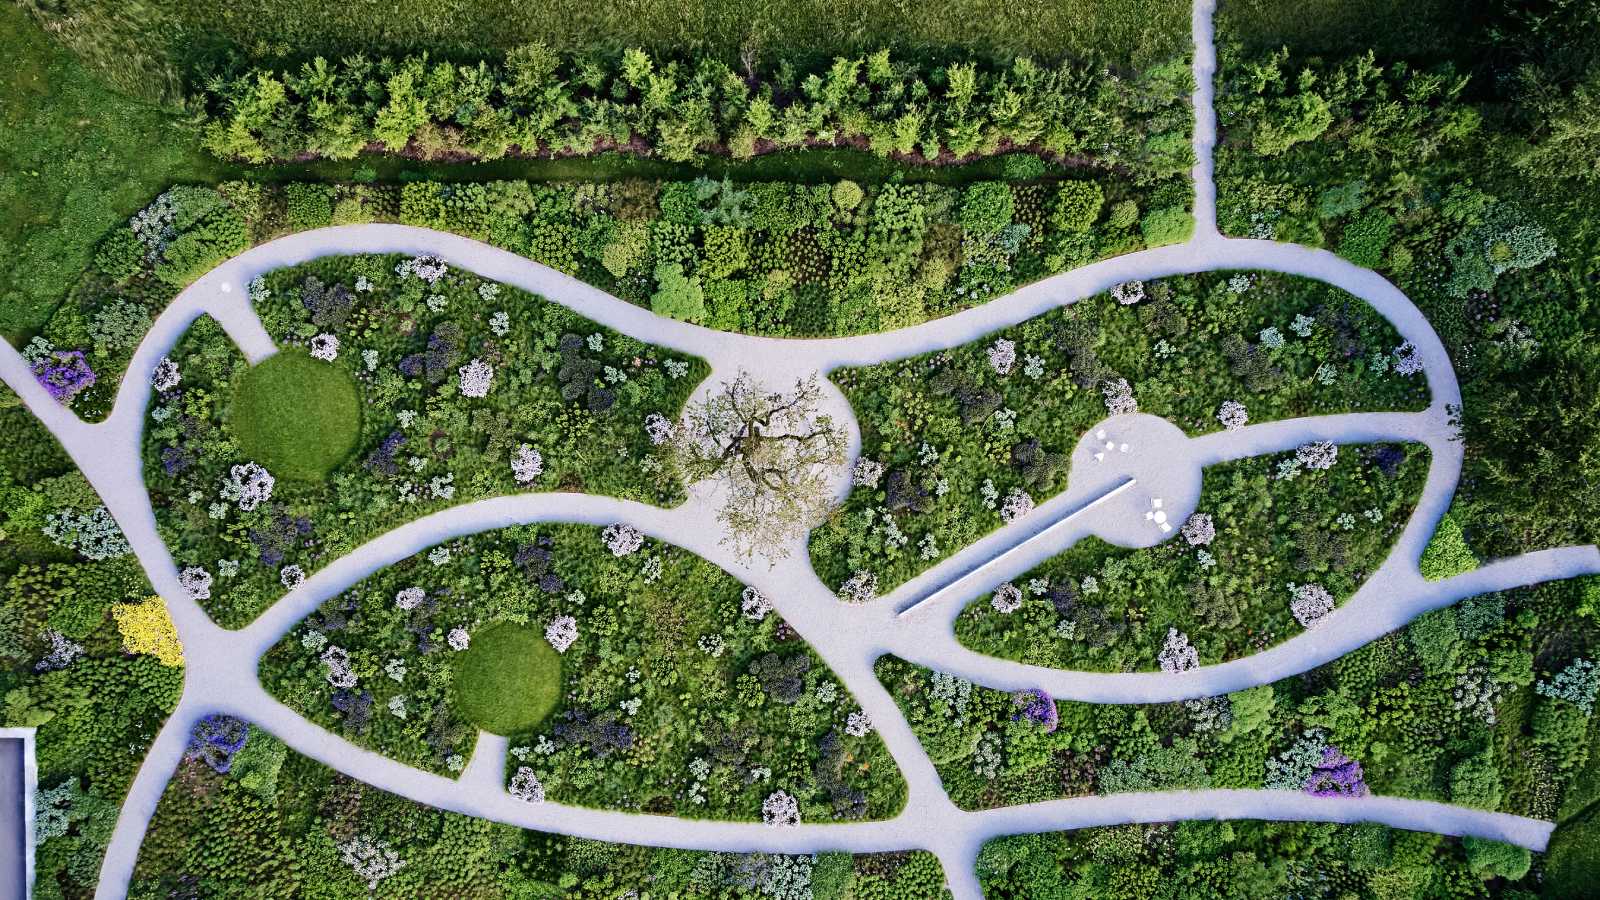 Oudolf Garten, proyecto de Piet Oudolf de 2020
en el Vitra Campus. Fotografía: Dejan Jovanovic. - imagen 2